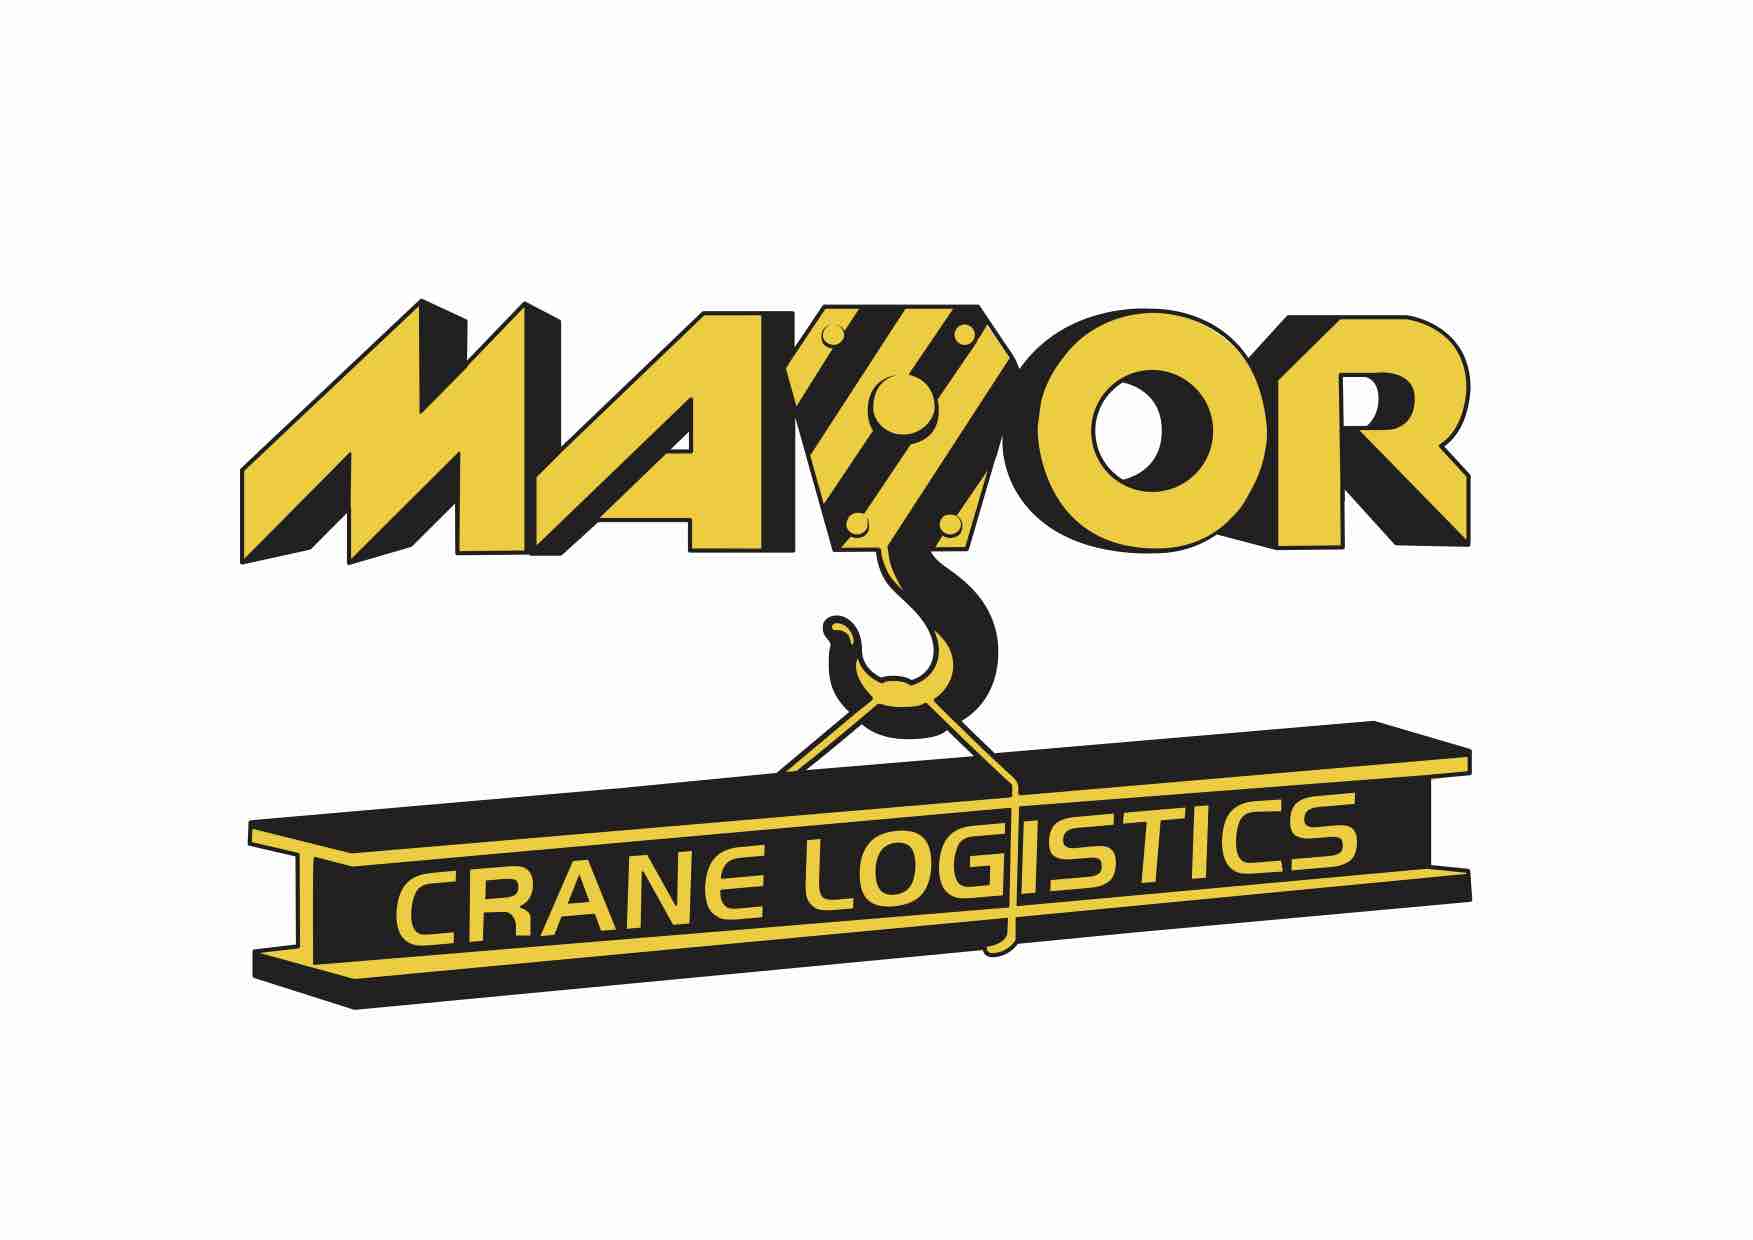 Major Cranes Logistics